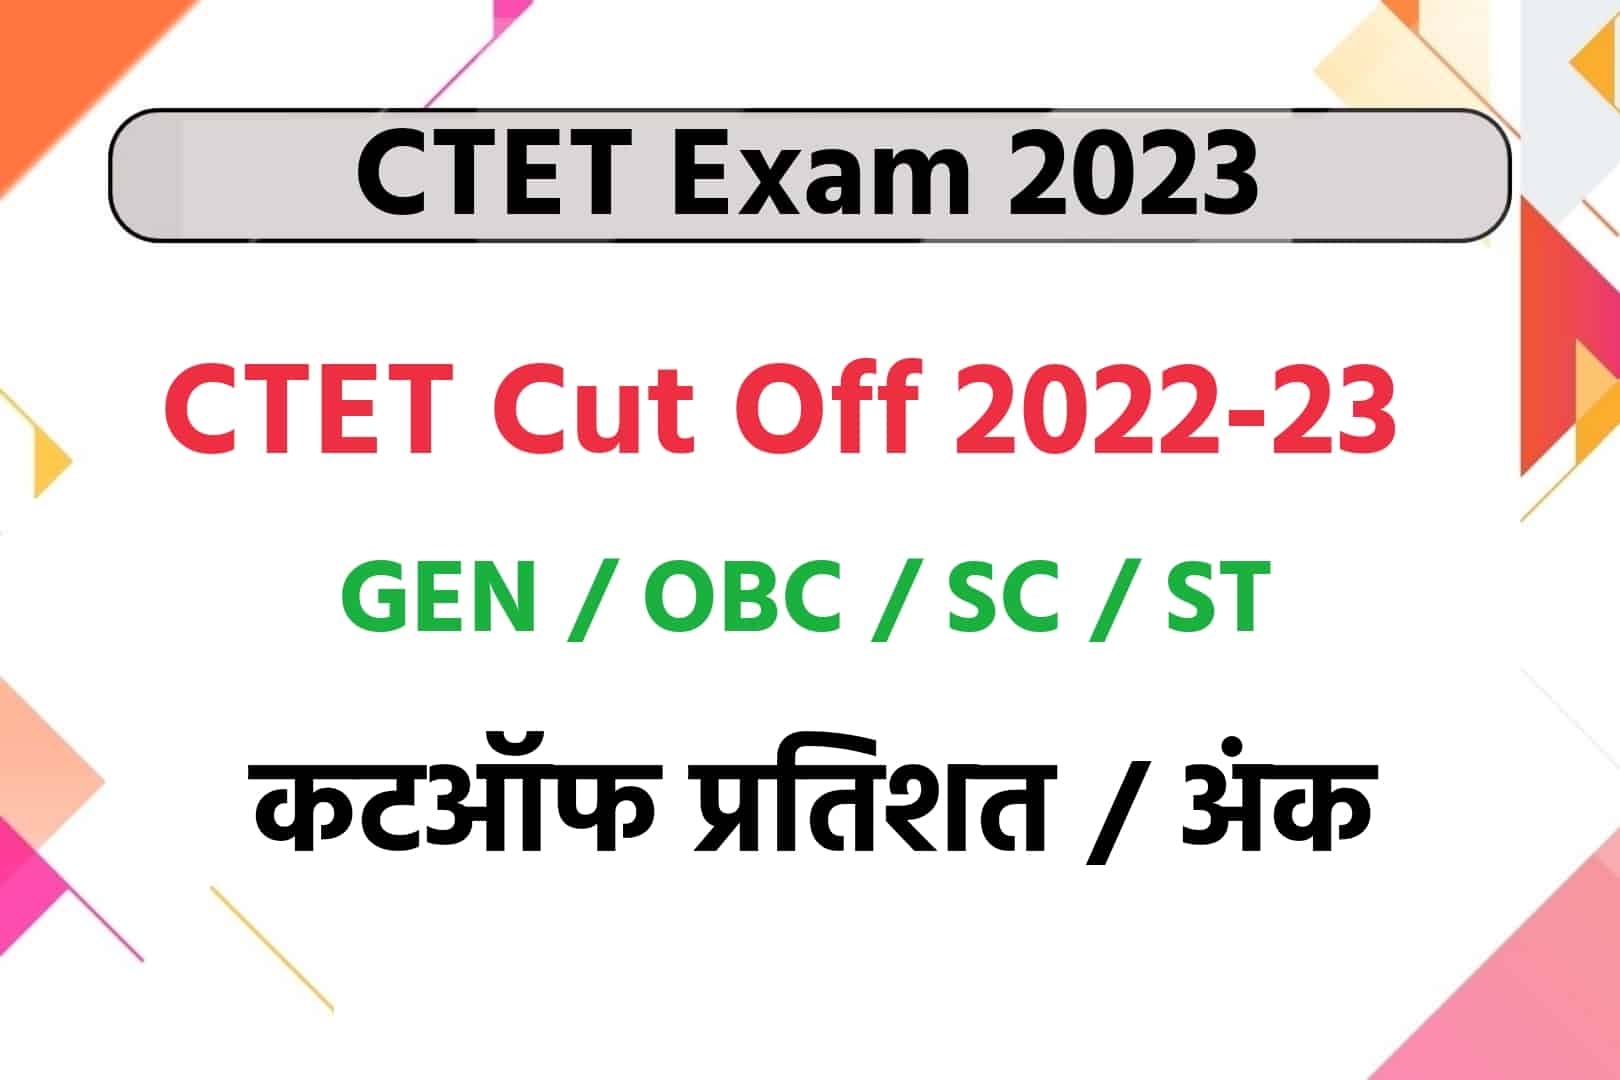 CTET Cut Off 2023 : देखें General, OBC, SC, ST, के लिए न्यूनतम कटऑफ अंक